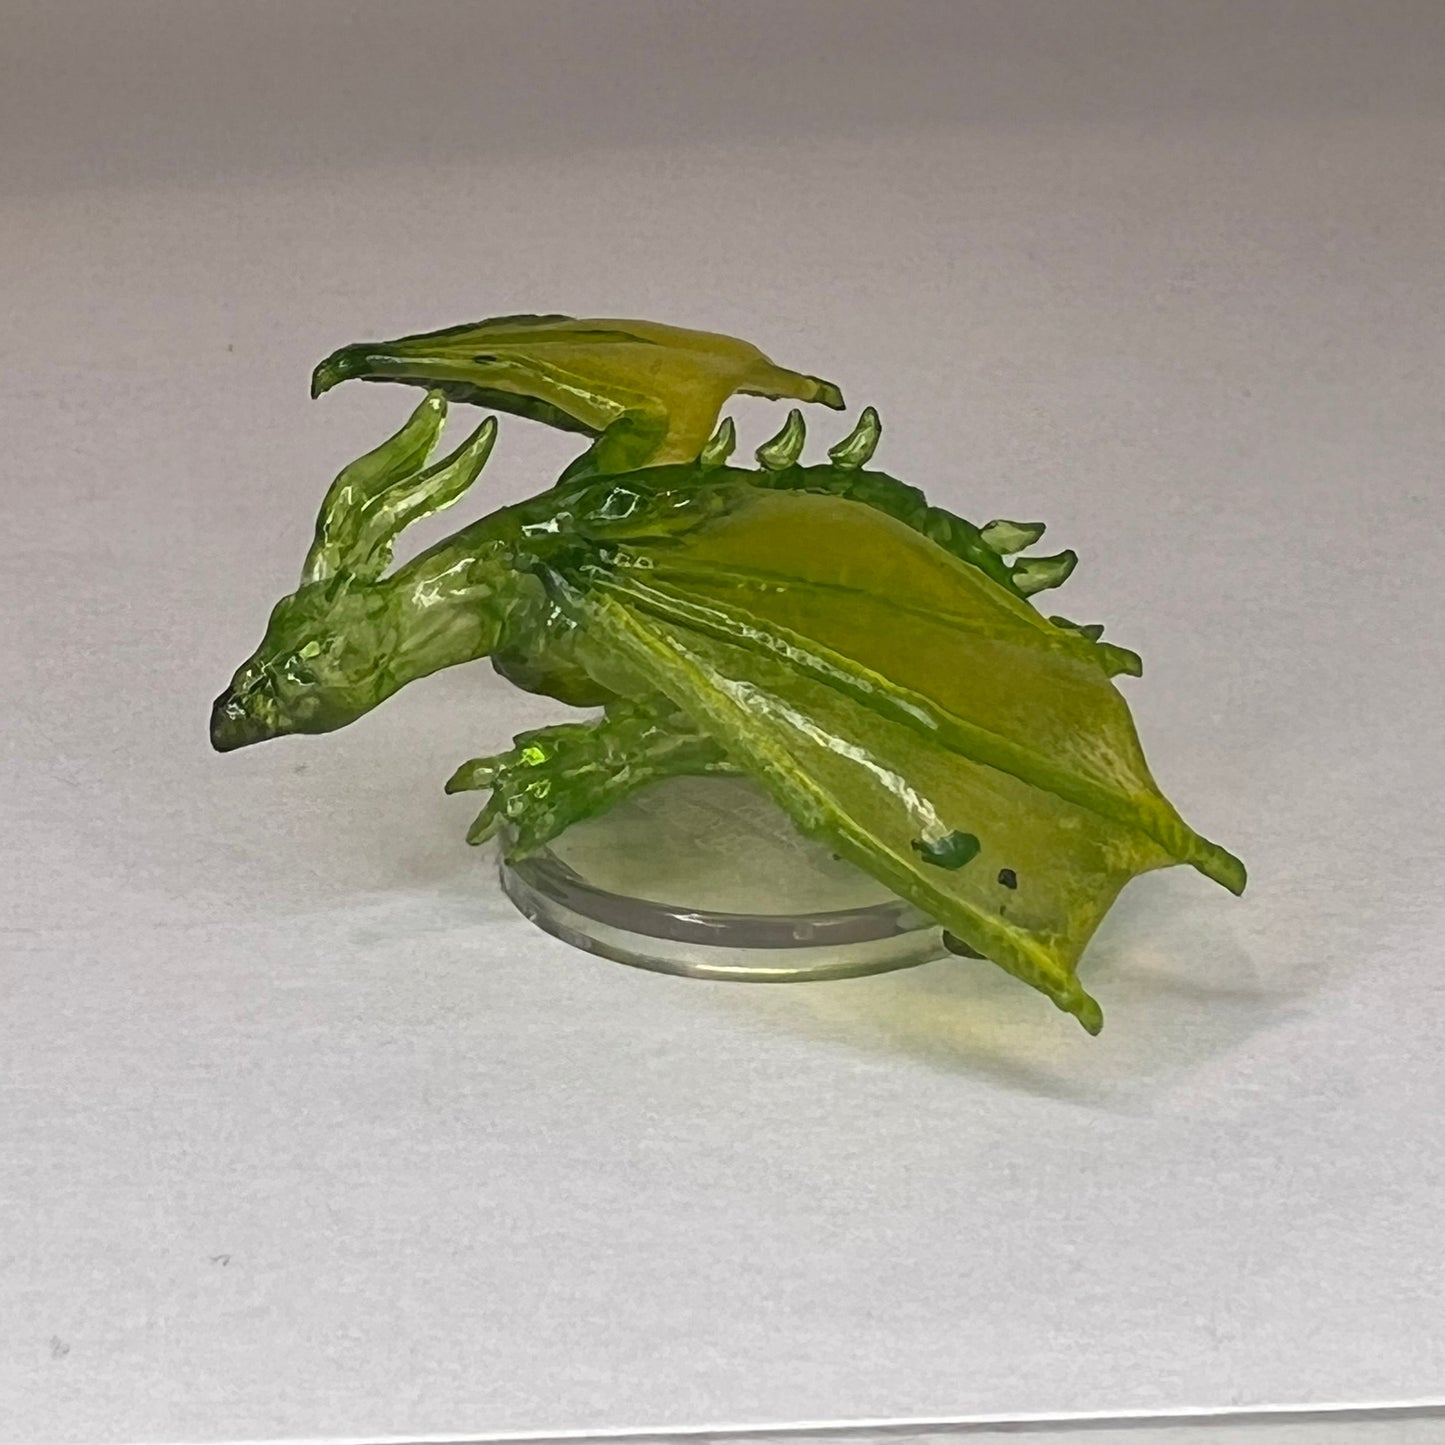 Emerald Dragon Wyrmling - Fizban's Treasury of Dragons 13/46